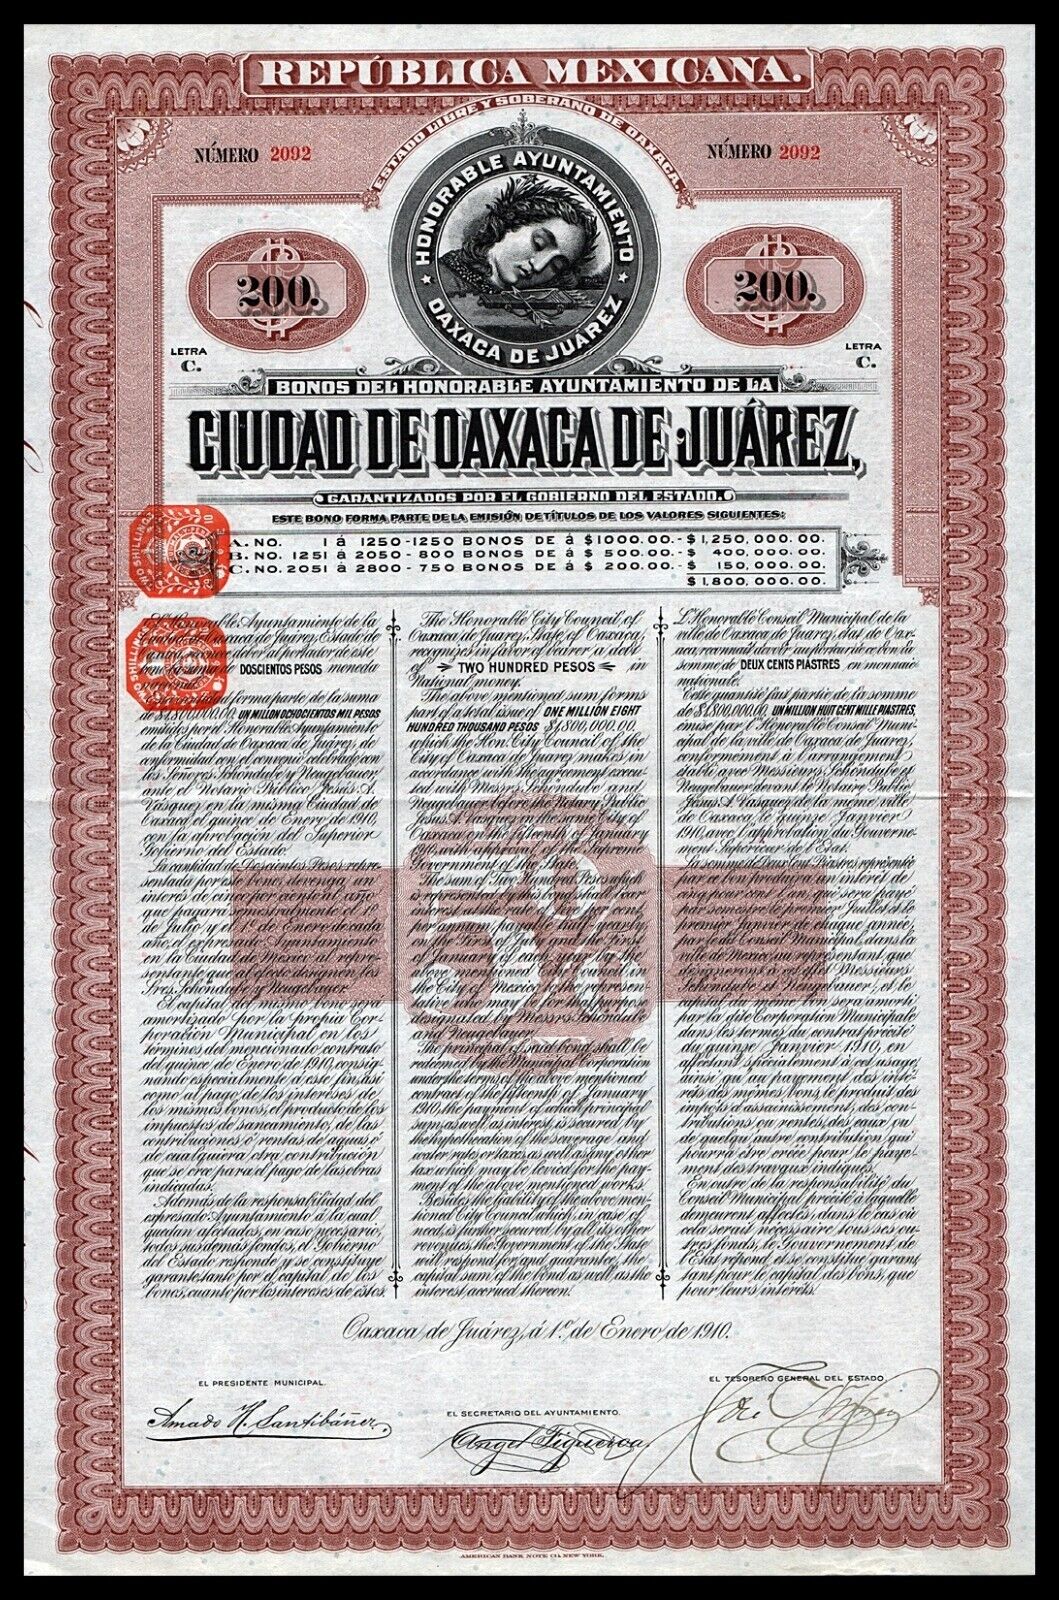 1910 Mexico: Ciudad De Oaxaca De Juarez - $200 Pesos Bond